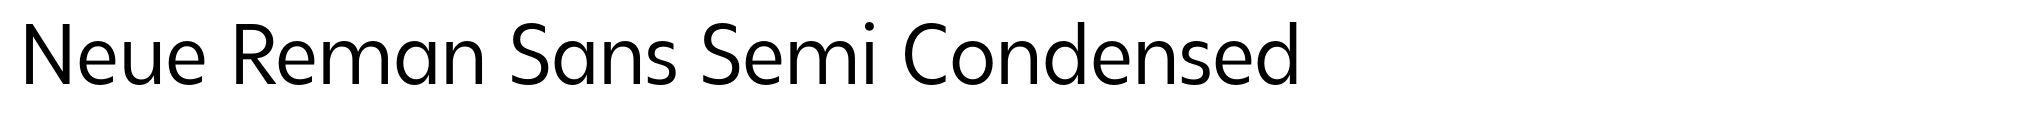 Neue Reman Sans Semi Condensed image